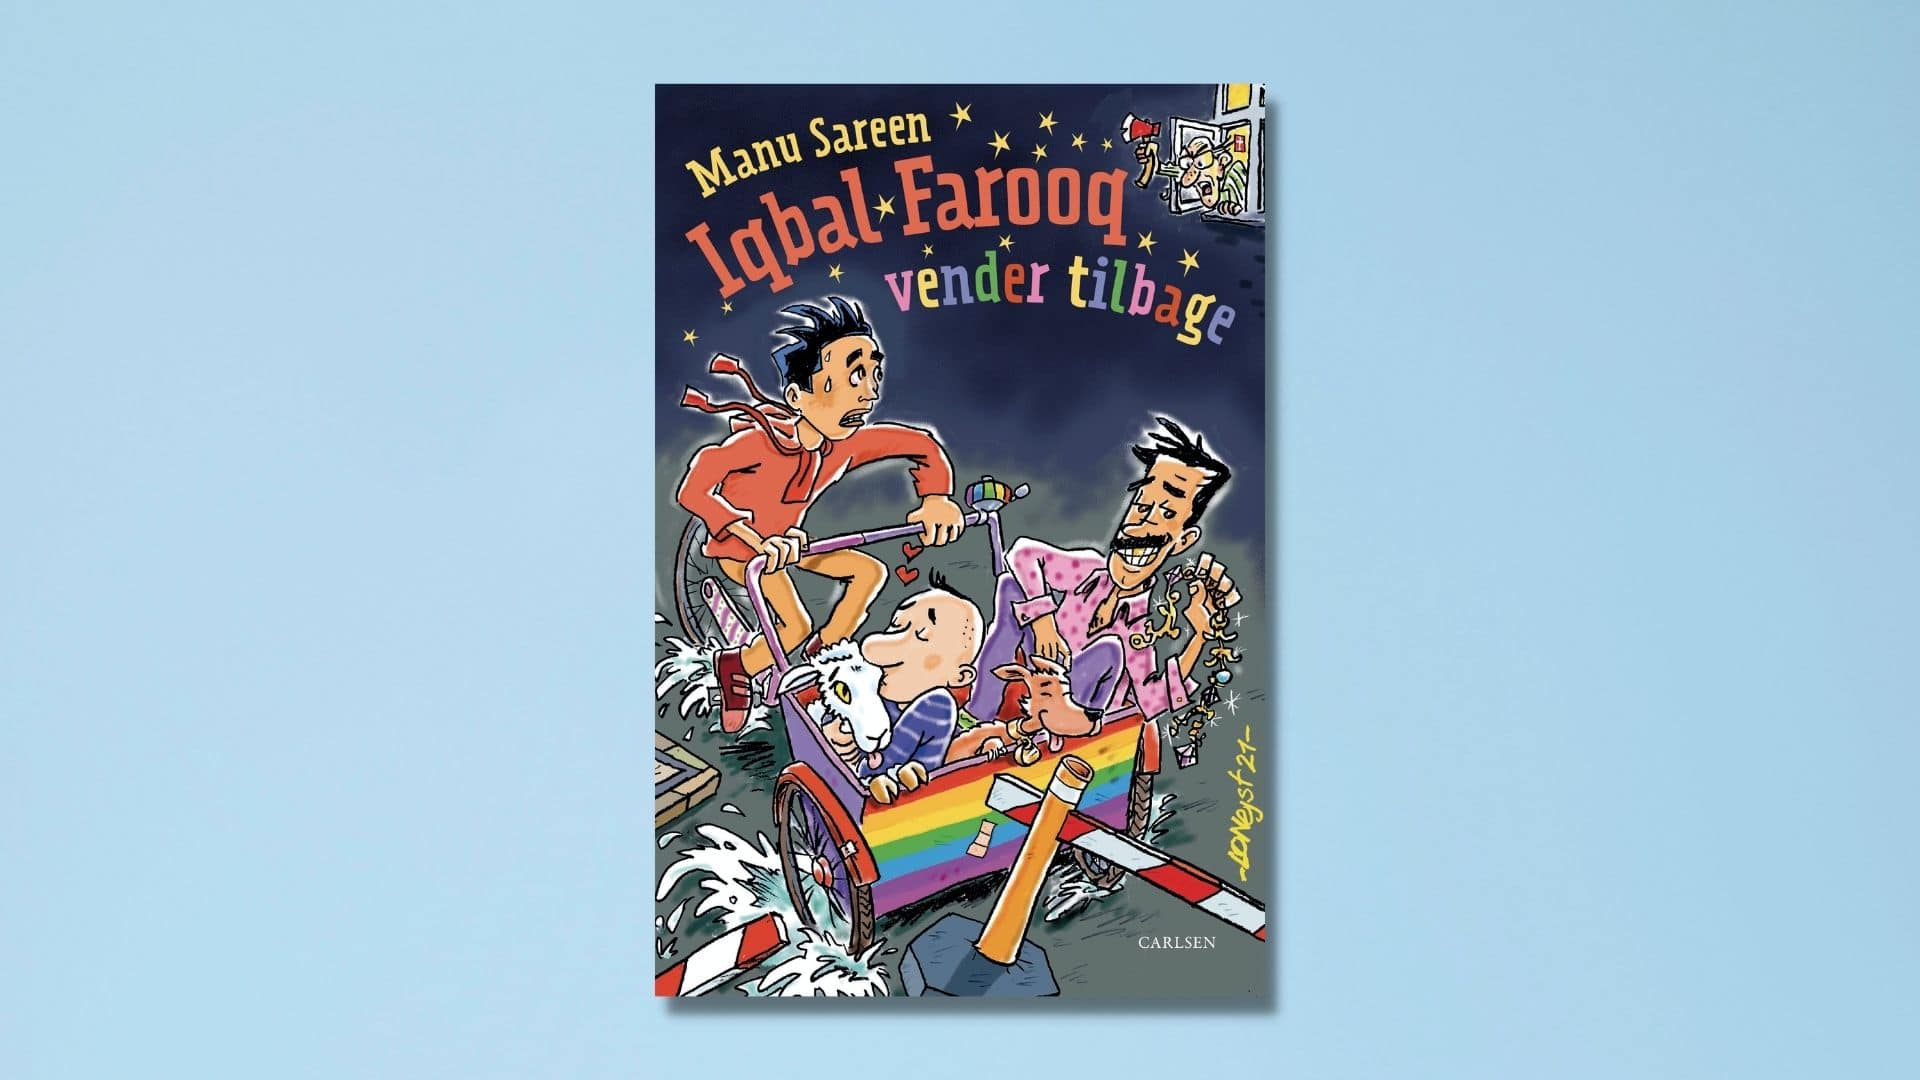 Iqbal Farooq vender tilbage er 11. bog i den populære serie af Manu Sareen. Smuglæs i bogen her